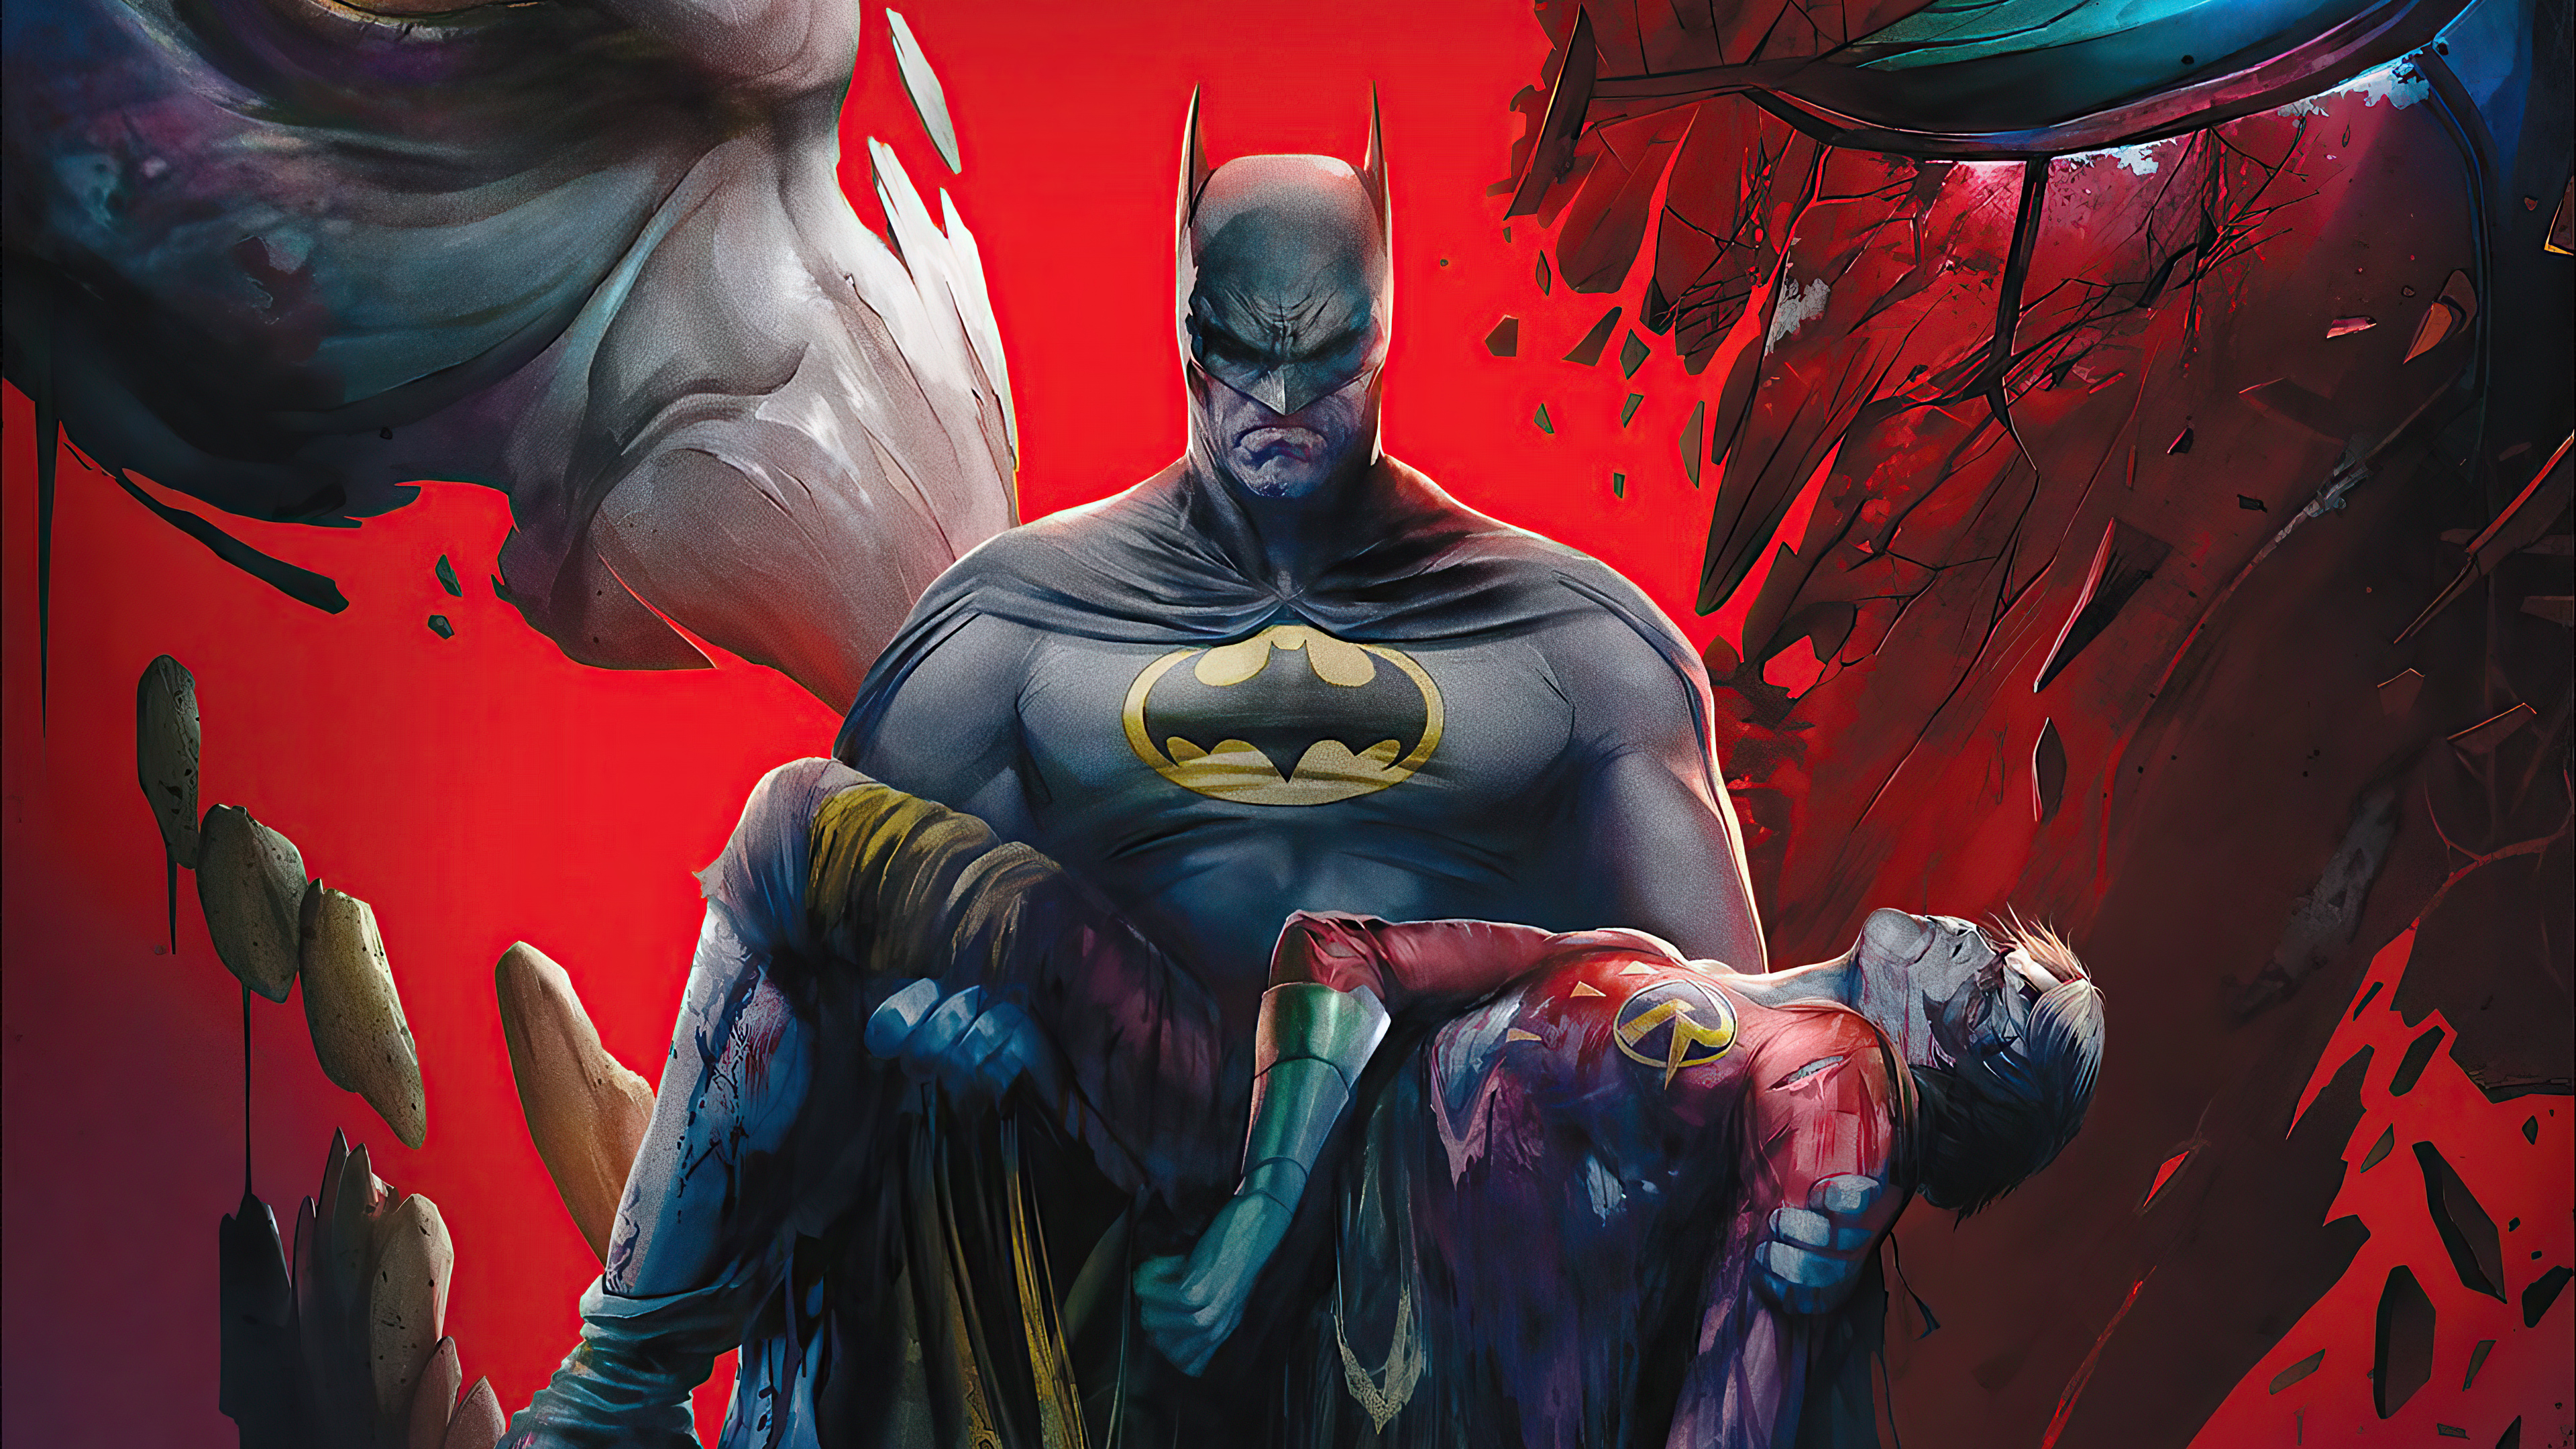 Melhores papéis de parede de Batman: Morte Em Família para tela do telefone